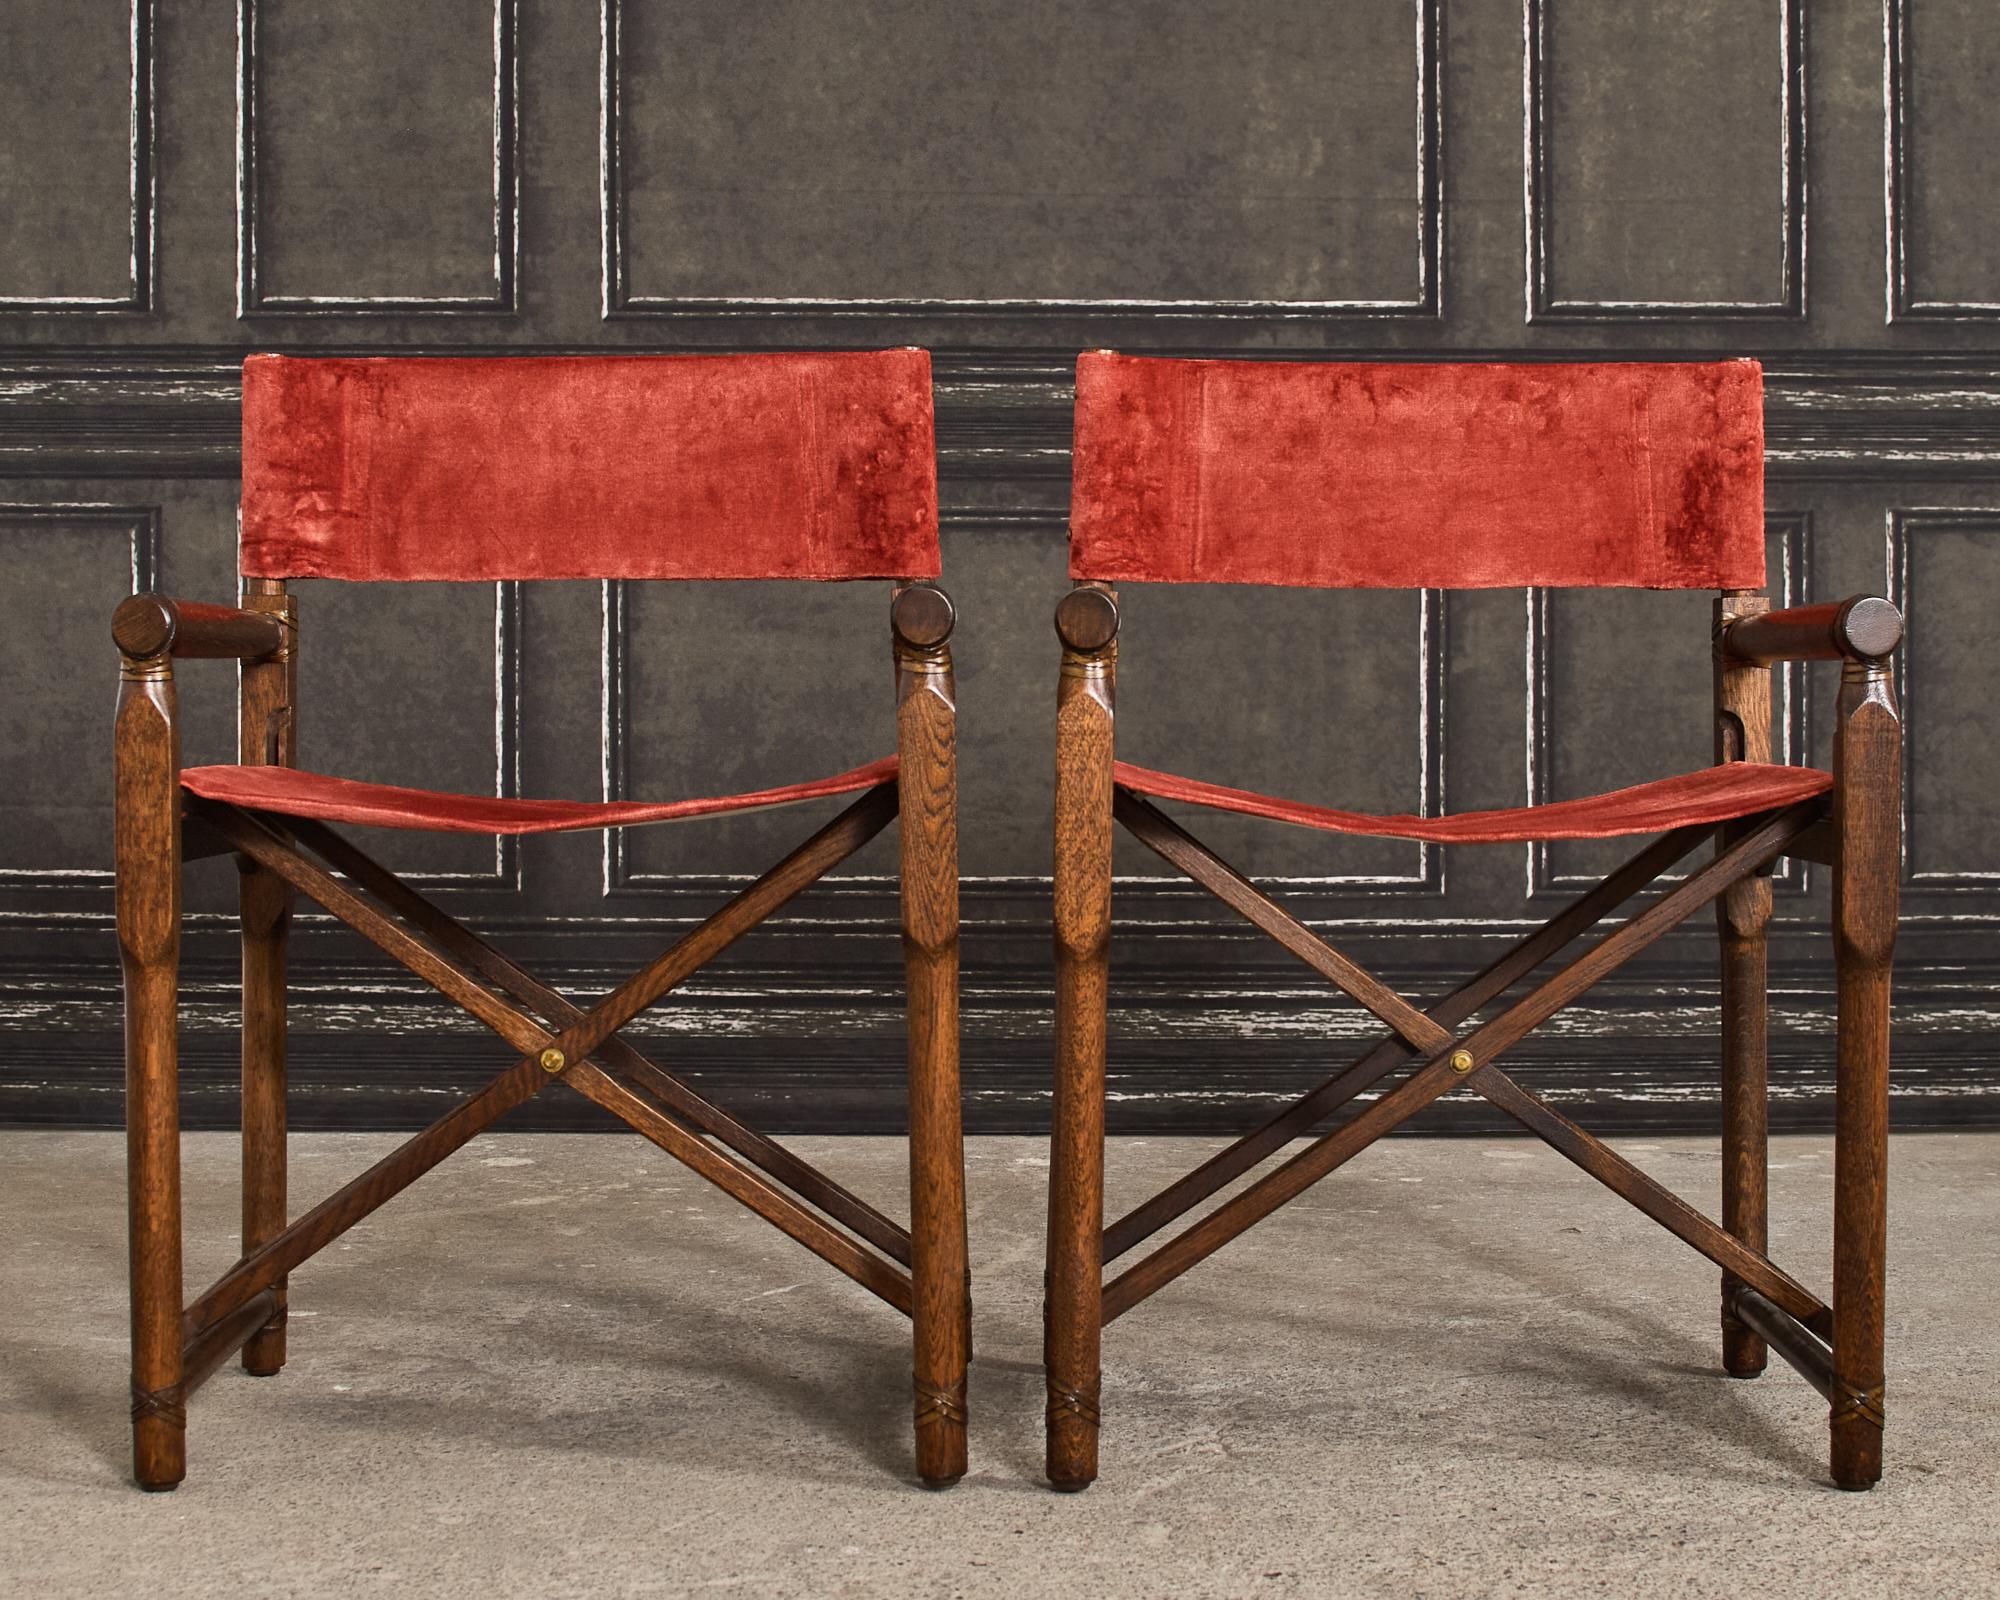 Rare paire de chaises pliantes de style Campaigner fabriquées par Foldes. Les chaises sont dotées d'un cadre en chêne au lieu de la structure en rotin plus courante pour laquelle McGuire est connu. Les cadres en chêne sont dotés d'écharpes en